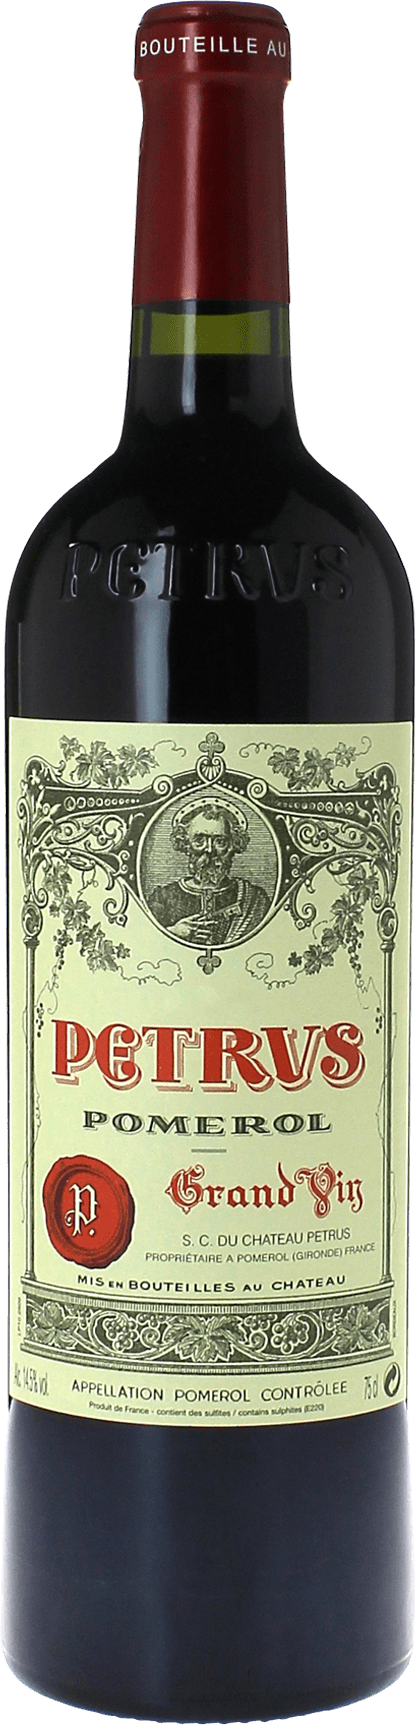 Petrus 1989  Pomerol, Bordeaux rouge